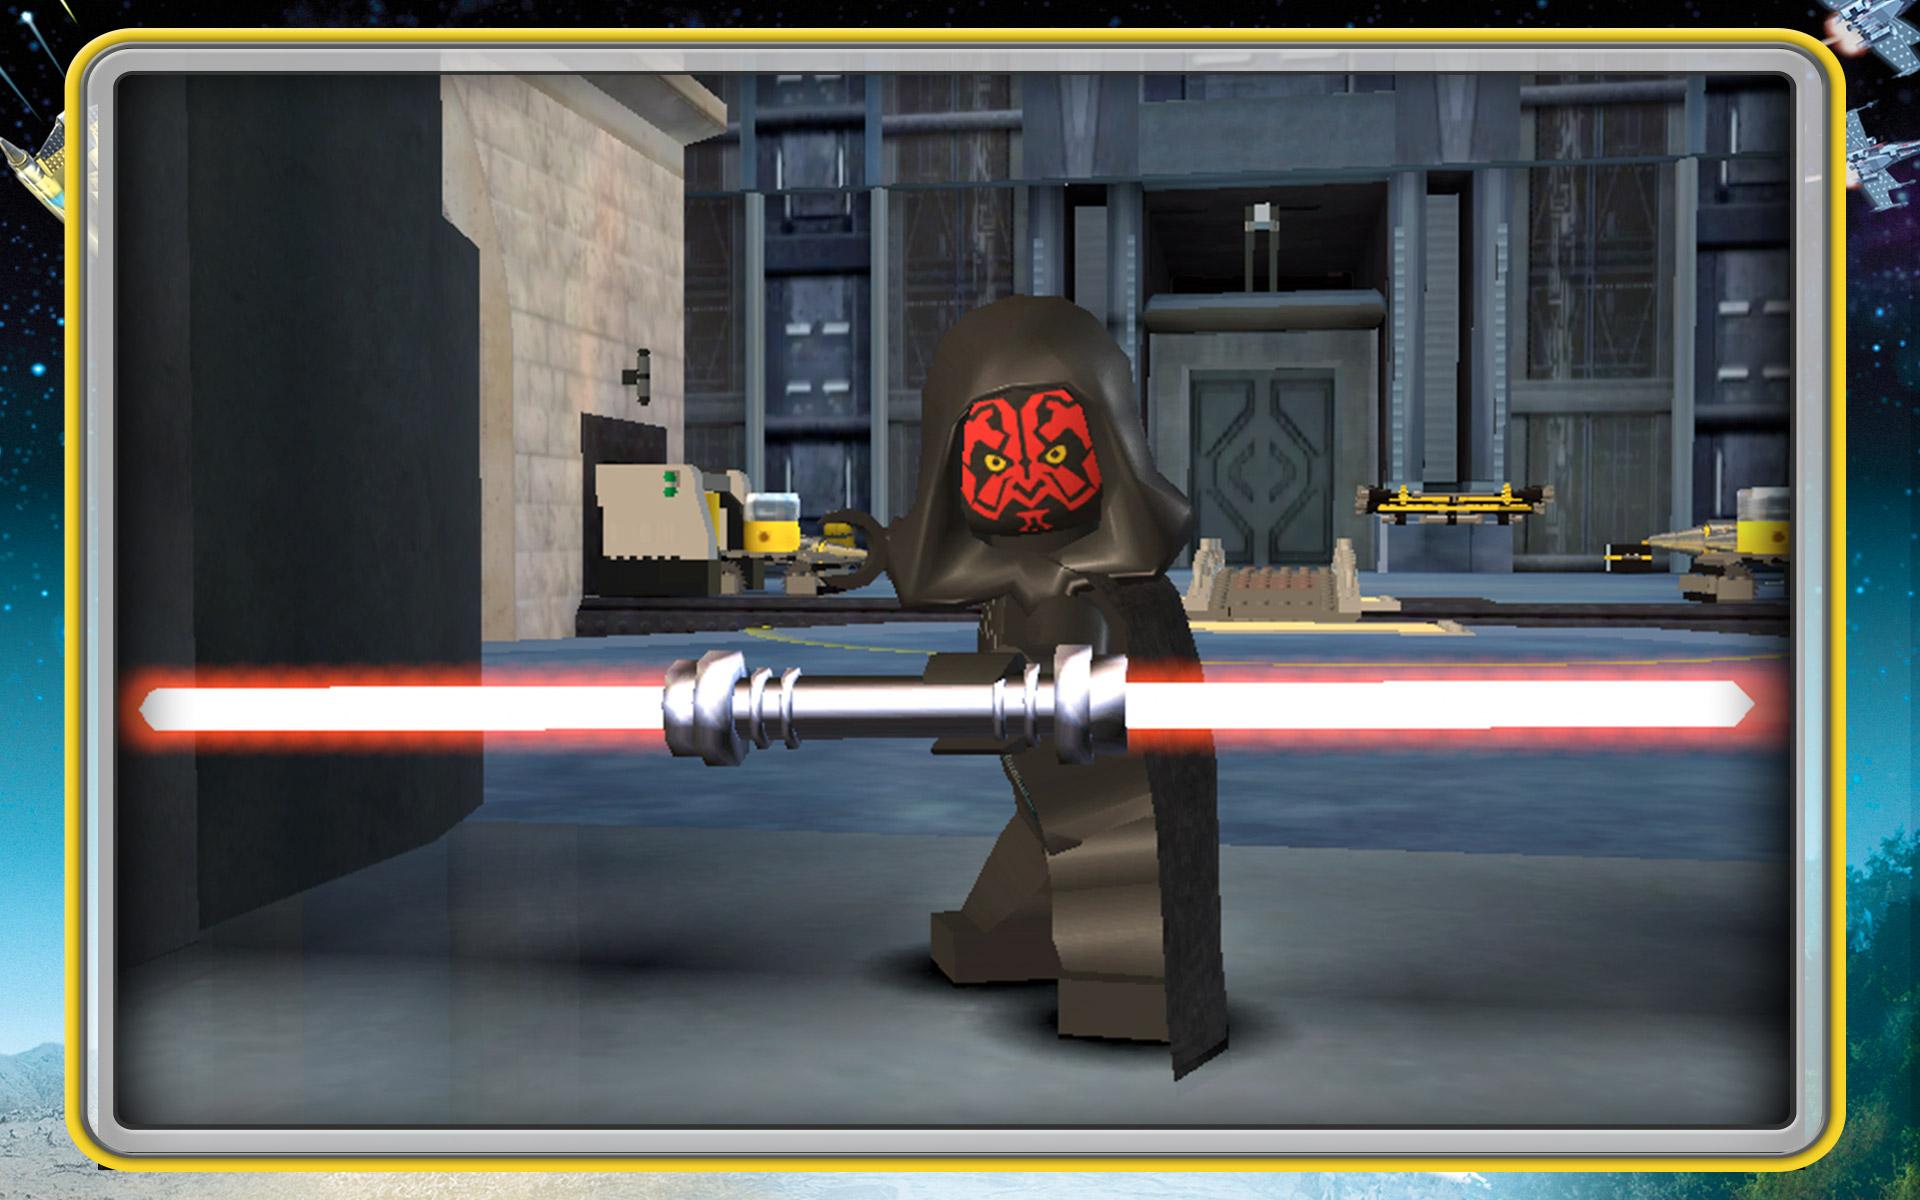 Baixar & Jogar LEGO Star Wars: TFA no PC & Mac (Emulador)